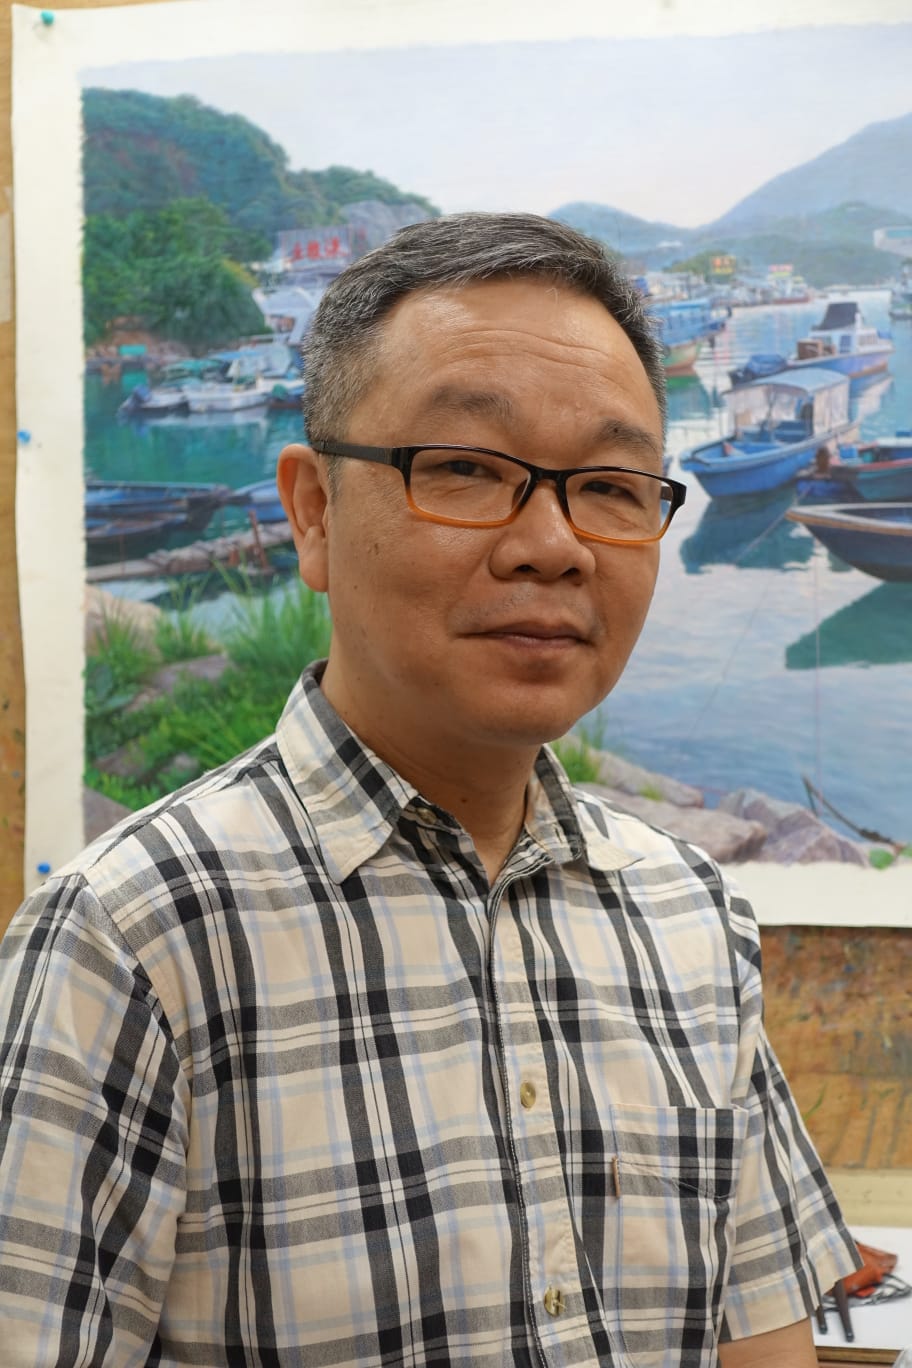 林冠雄 (Jason Lam)，香港土生土長畫家